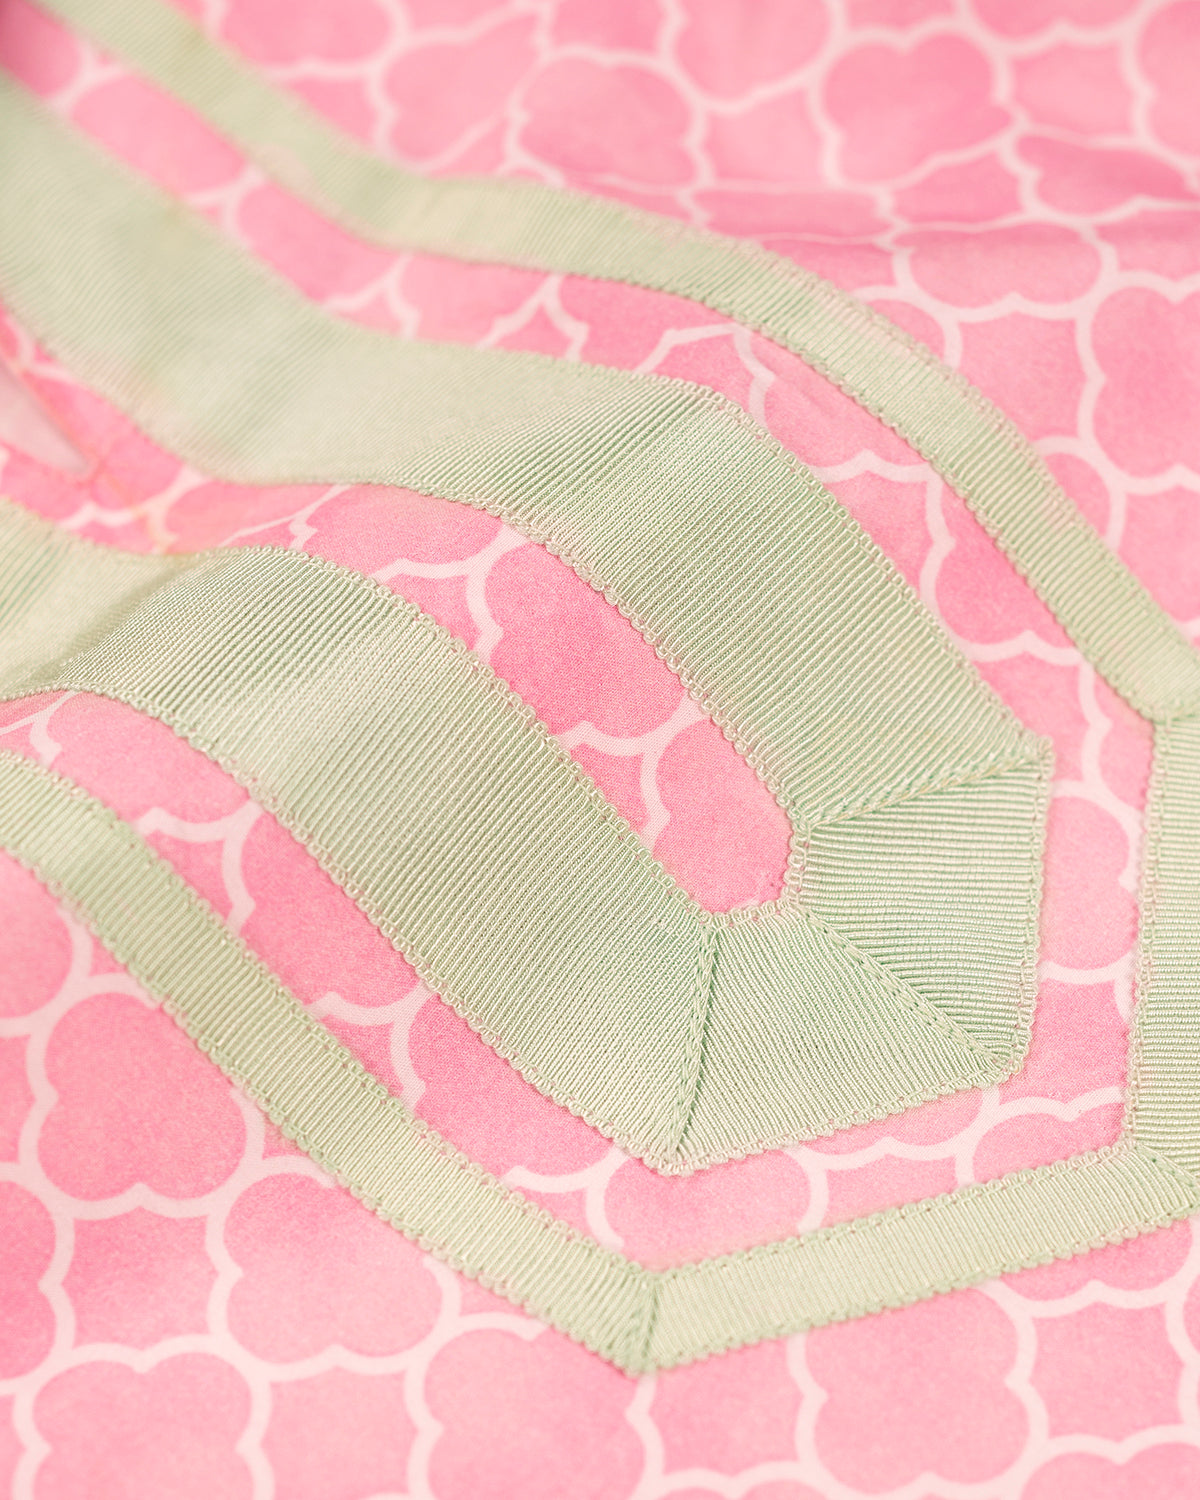 Capri Long Tunic Dress in Light Pink Alhambra Print-Closeup of grosgrain ribbon trim